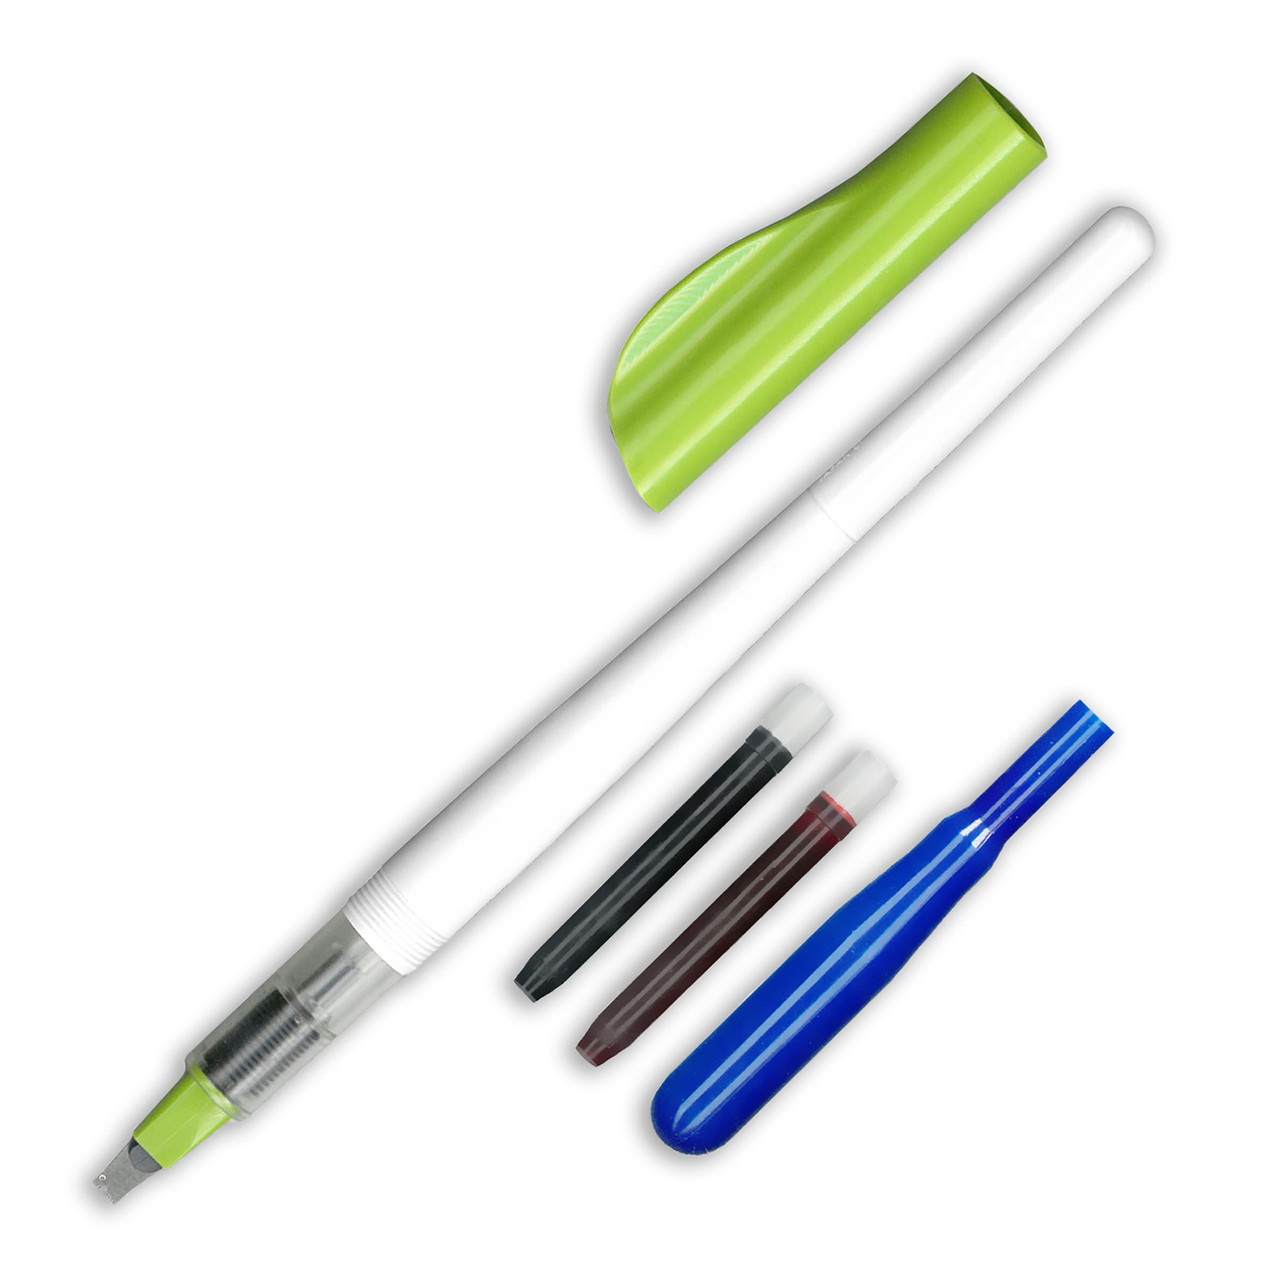 Pilot Parallel Pen - 1.5 / 2.4 / 3.0 / 3.8 / 4.5 / 6.0 mm